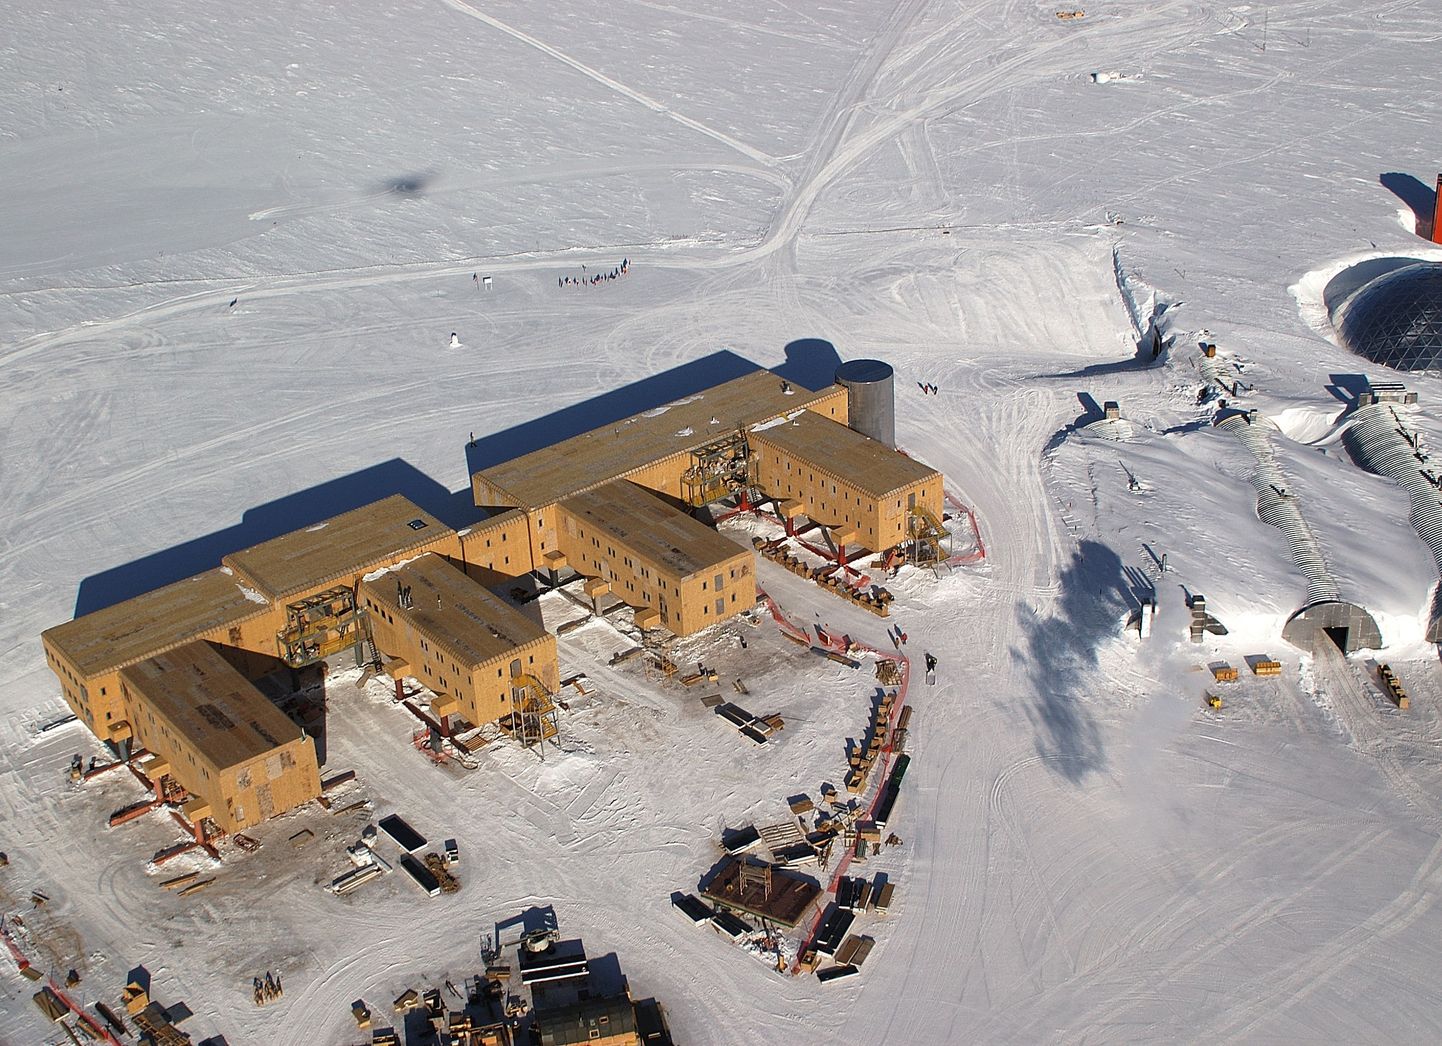 Amundsen-Scotti polaarjaam lõunapoolusel. Pildil enamvähem keskel on hoone taga enne teerada näha ka lippudega varustatud tseremoniaalne poolus ja geograafilise pooluse tähis.